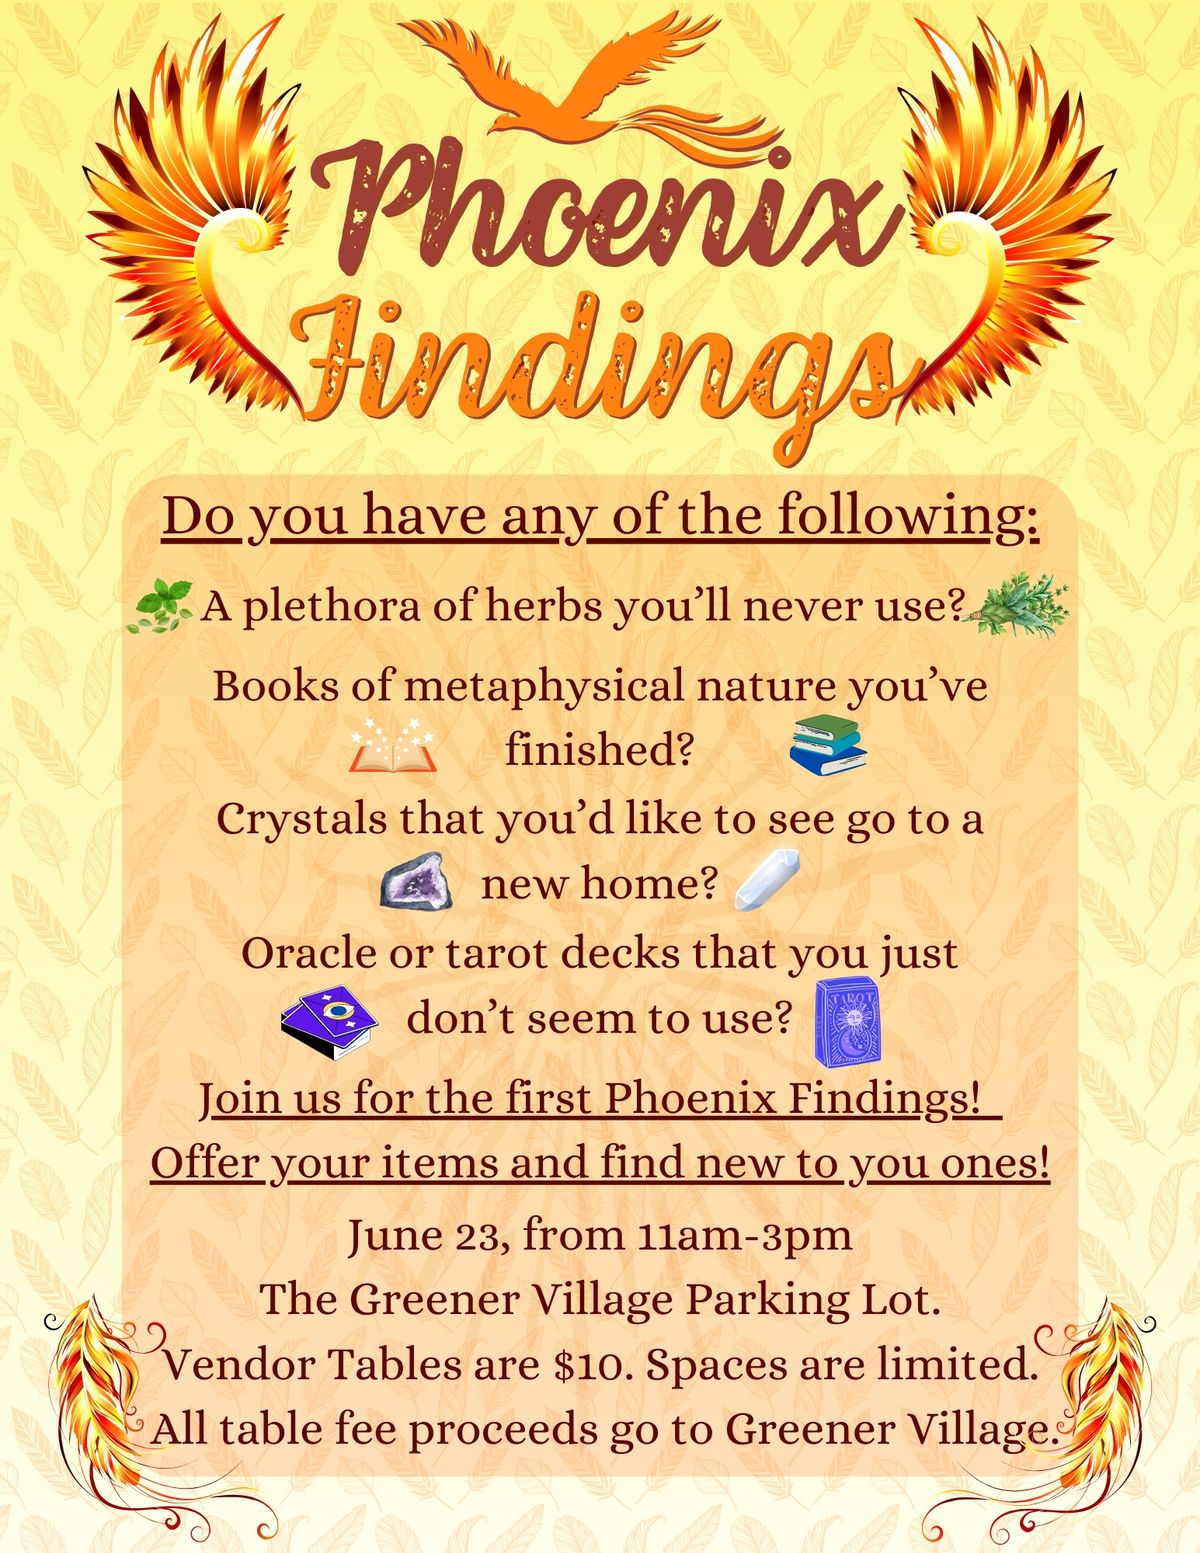 Phoenix Findings